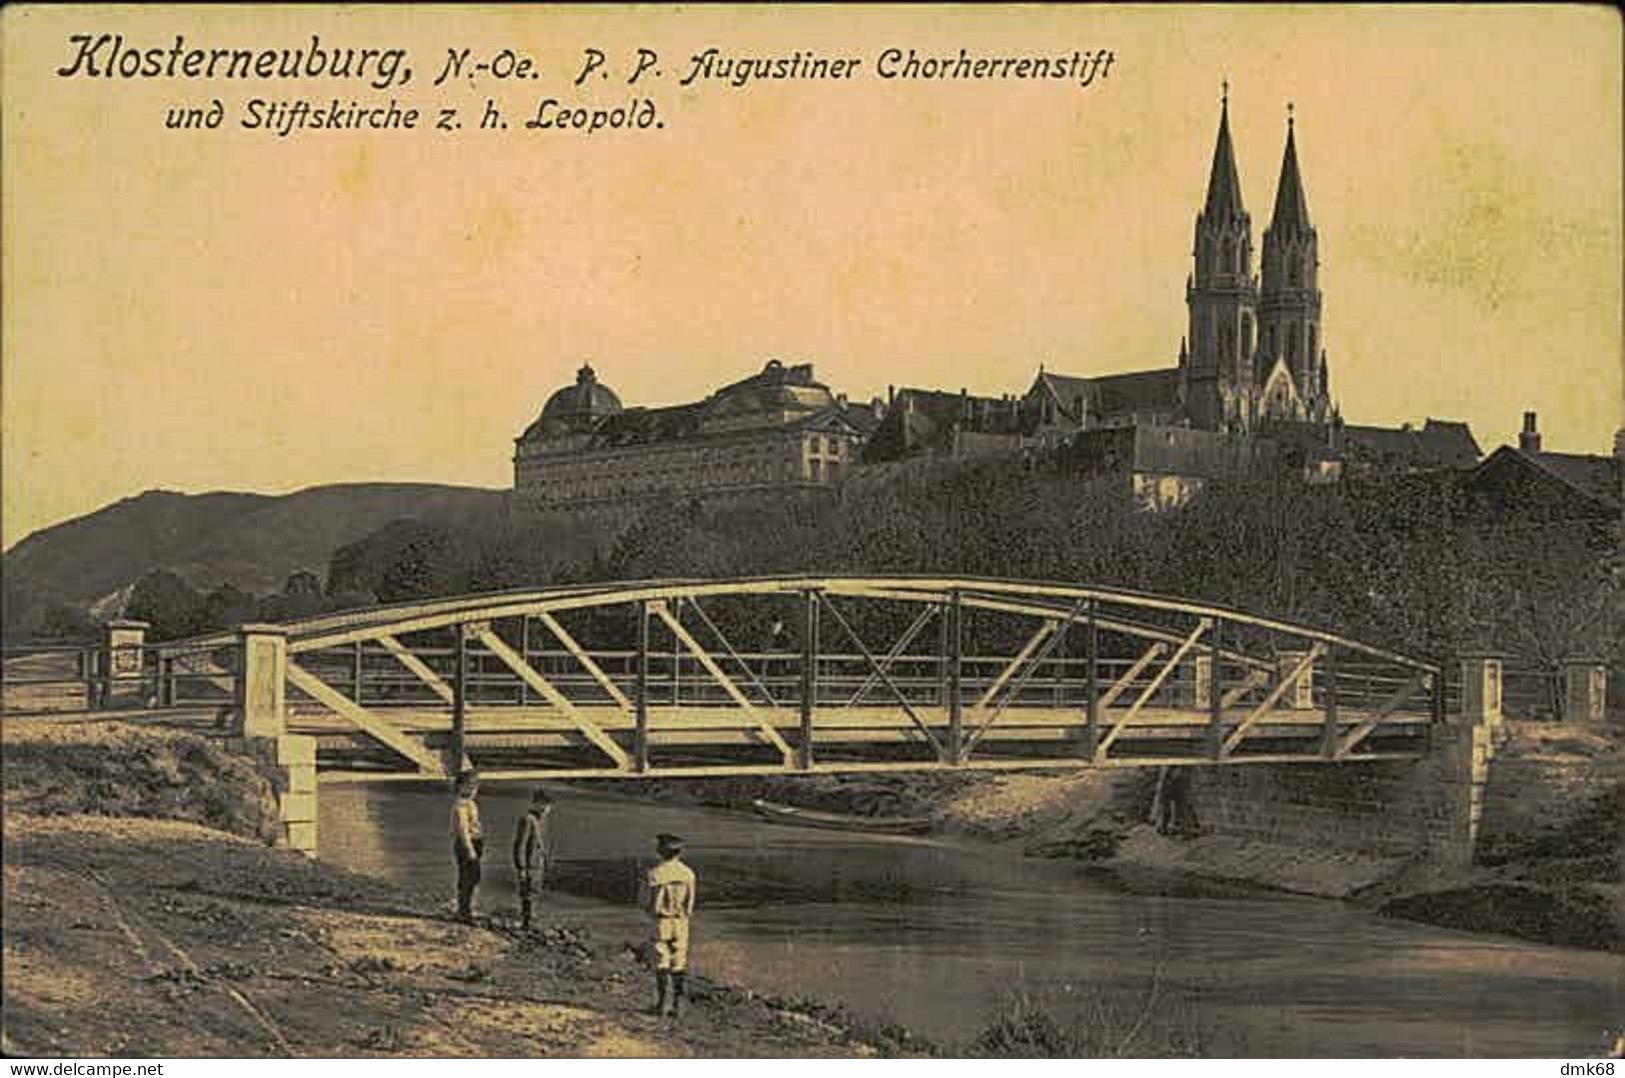 AUSTRIA - KLOSTERNEUBURG N. OE. P. P. AUGUSTINER CHORHERRENSTIFT UND STIFTSKIRCHE Z. H. LEOPOLD - 1916 (15580) - Klosterneuburg